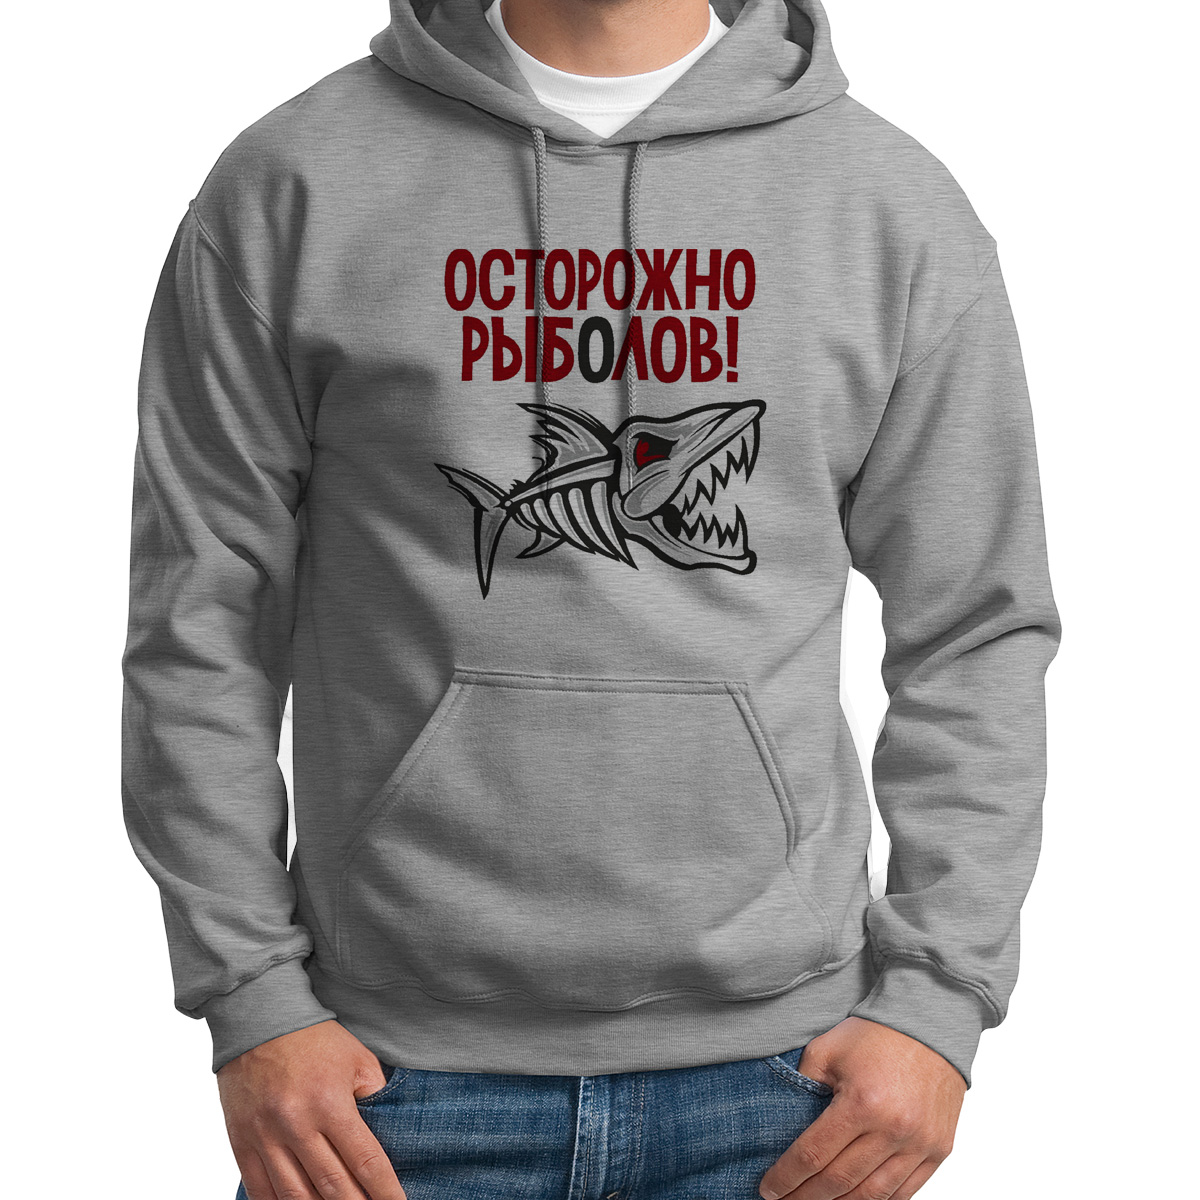 фото Худи унисекс coolpodarok рыбалка осторожно рыболов белое 44 ru